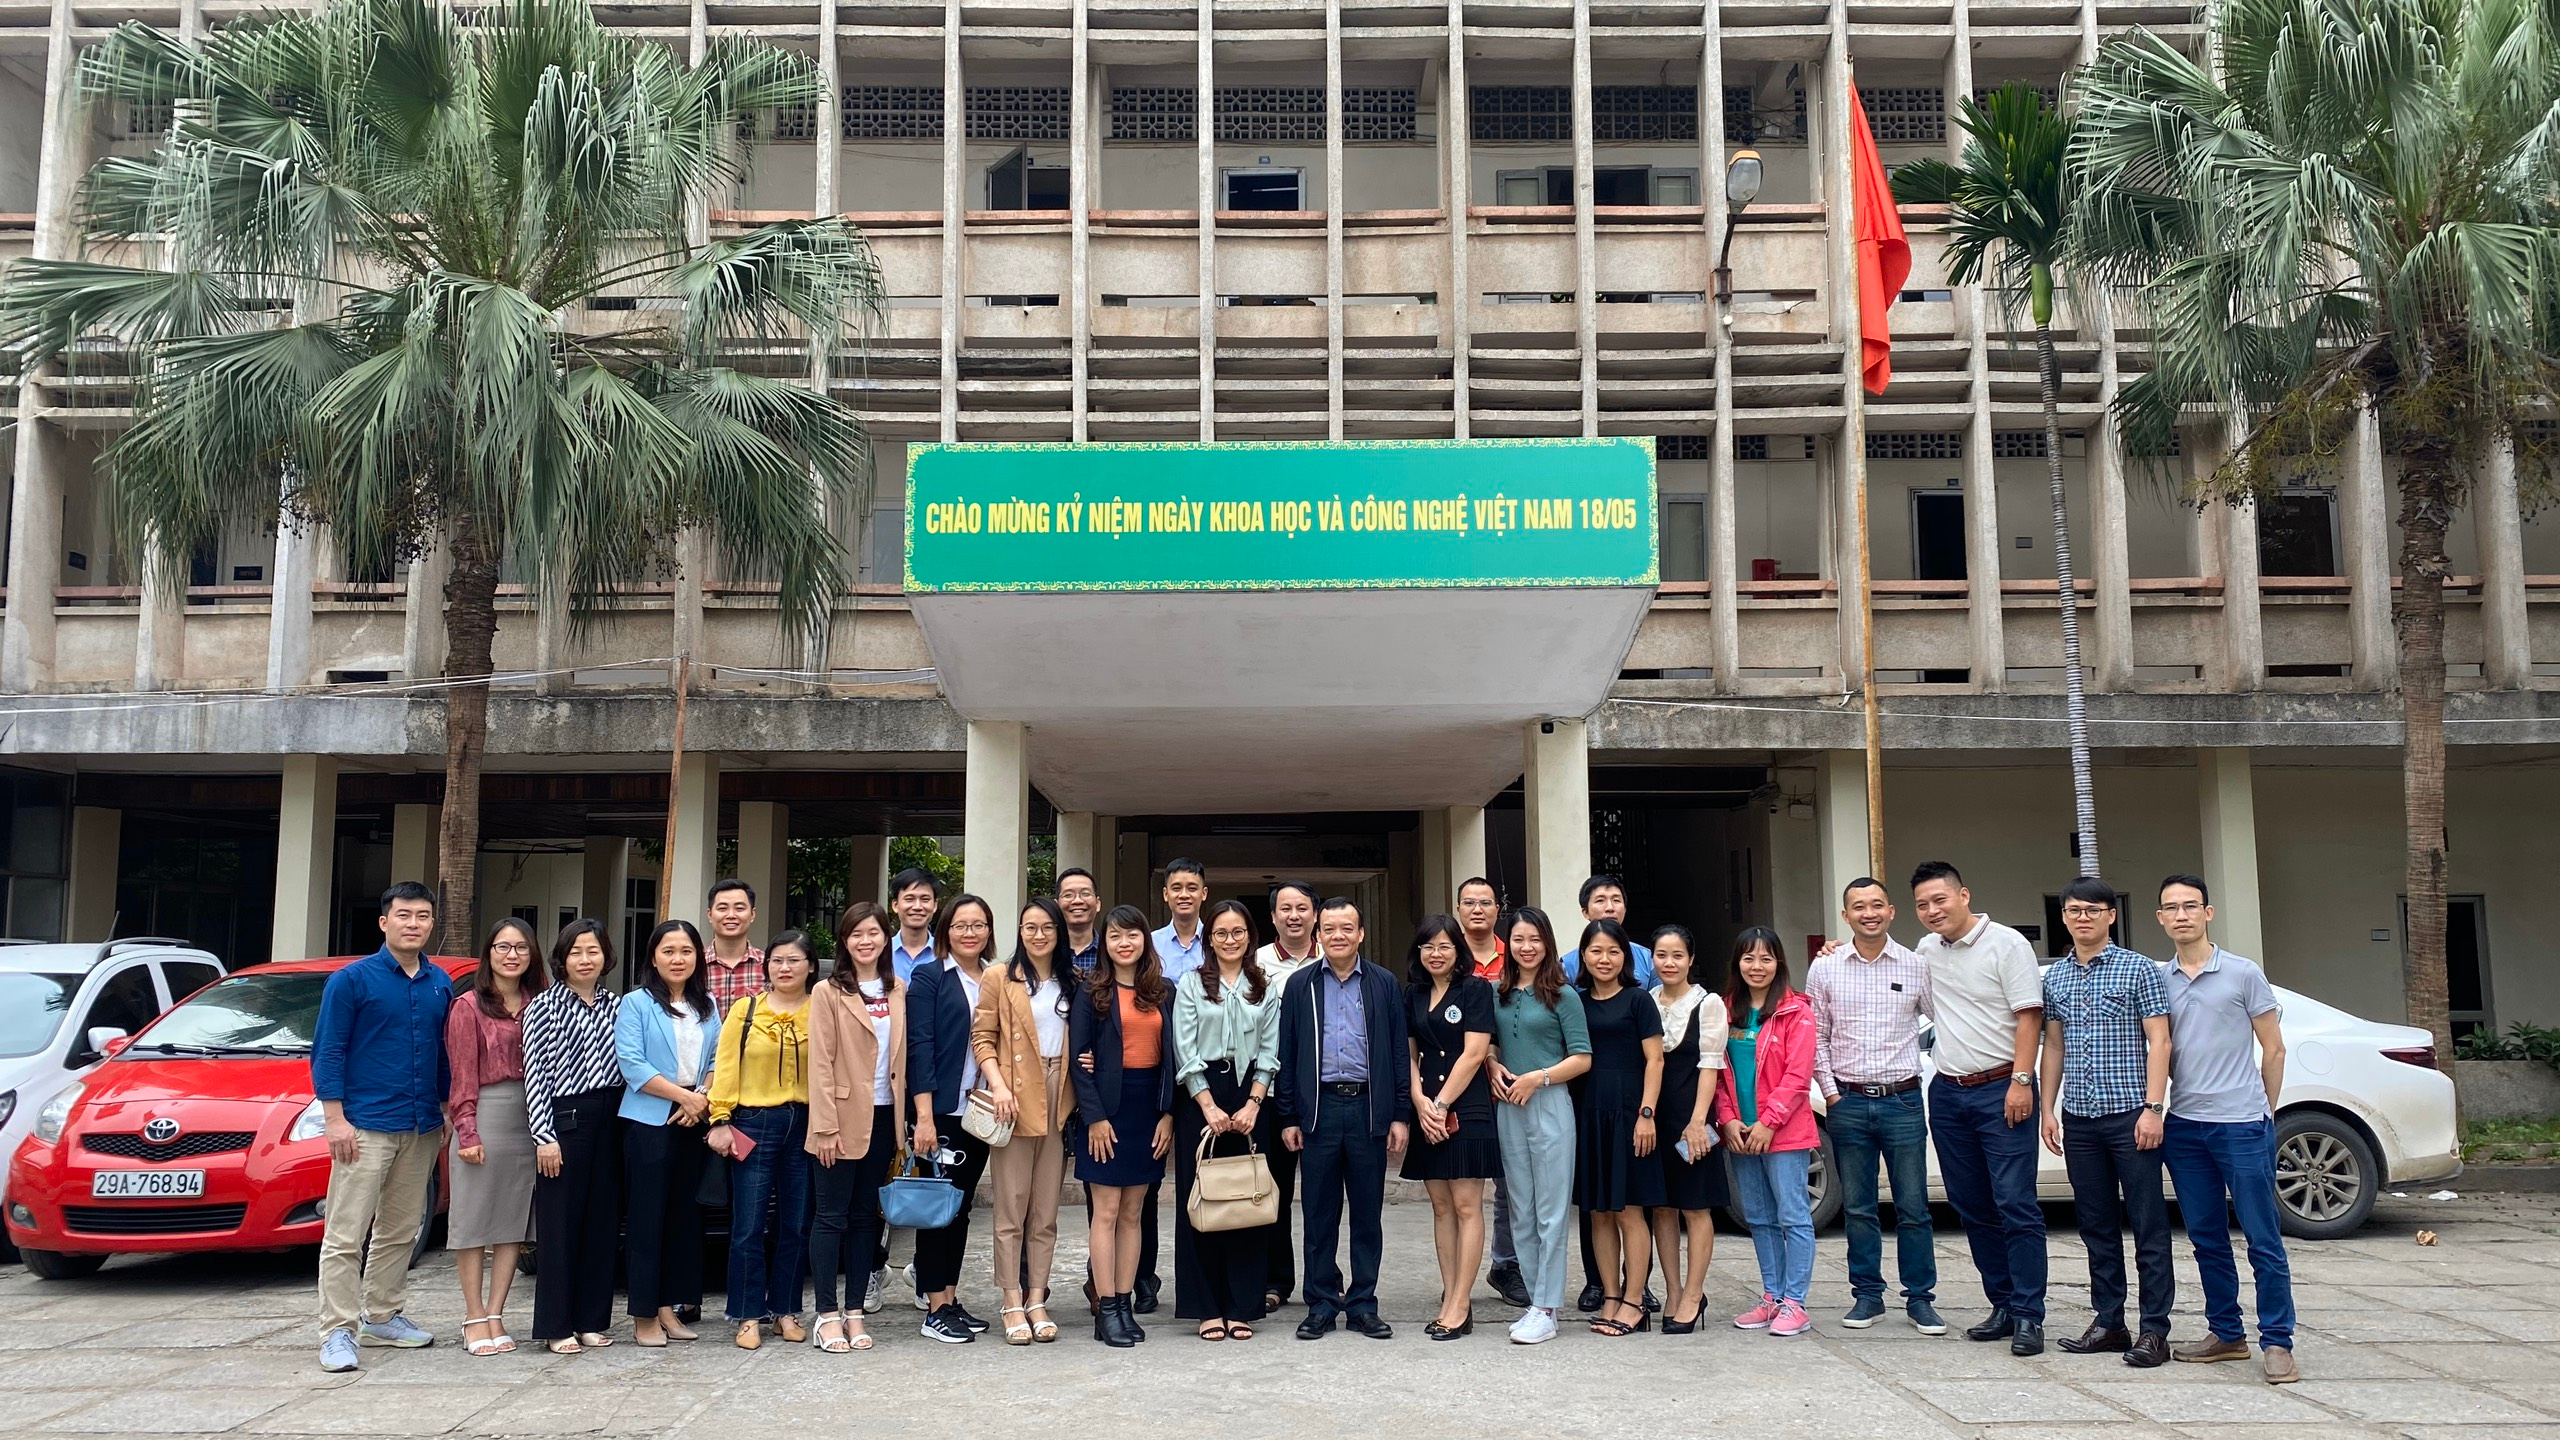 Chào mừng kỷ niệm ngày khoa học công nghệ Việt Nam